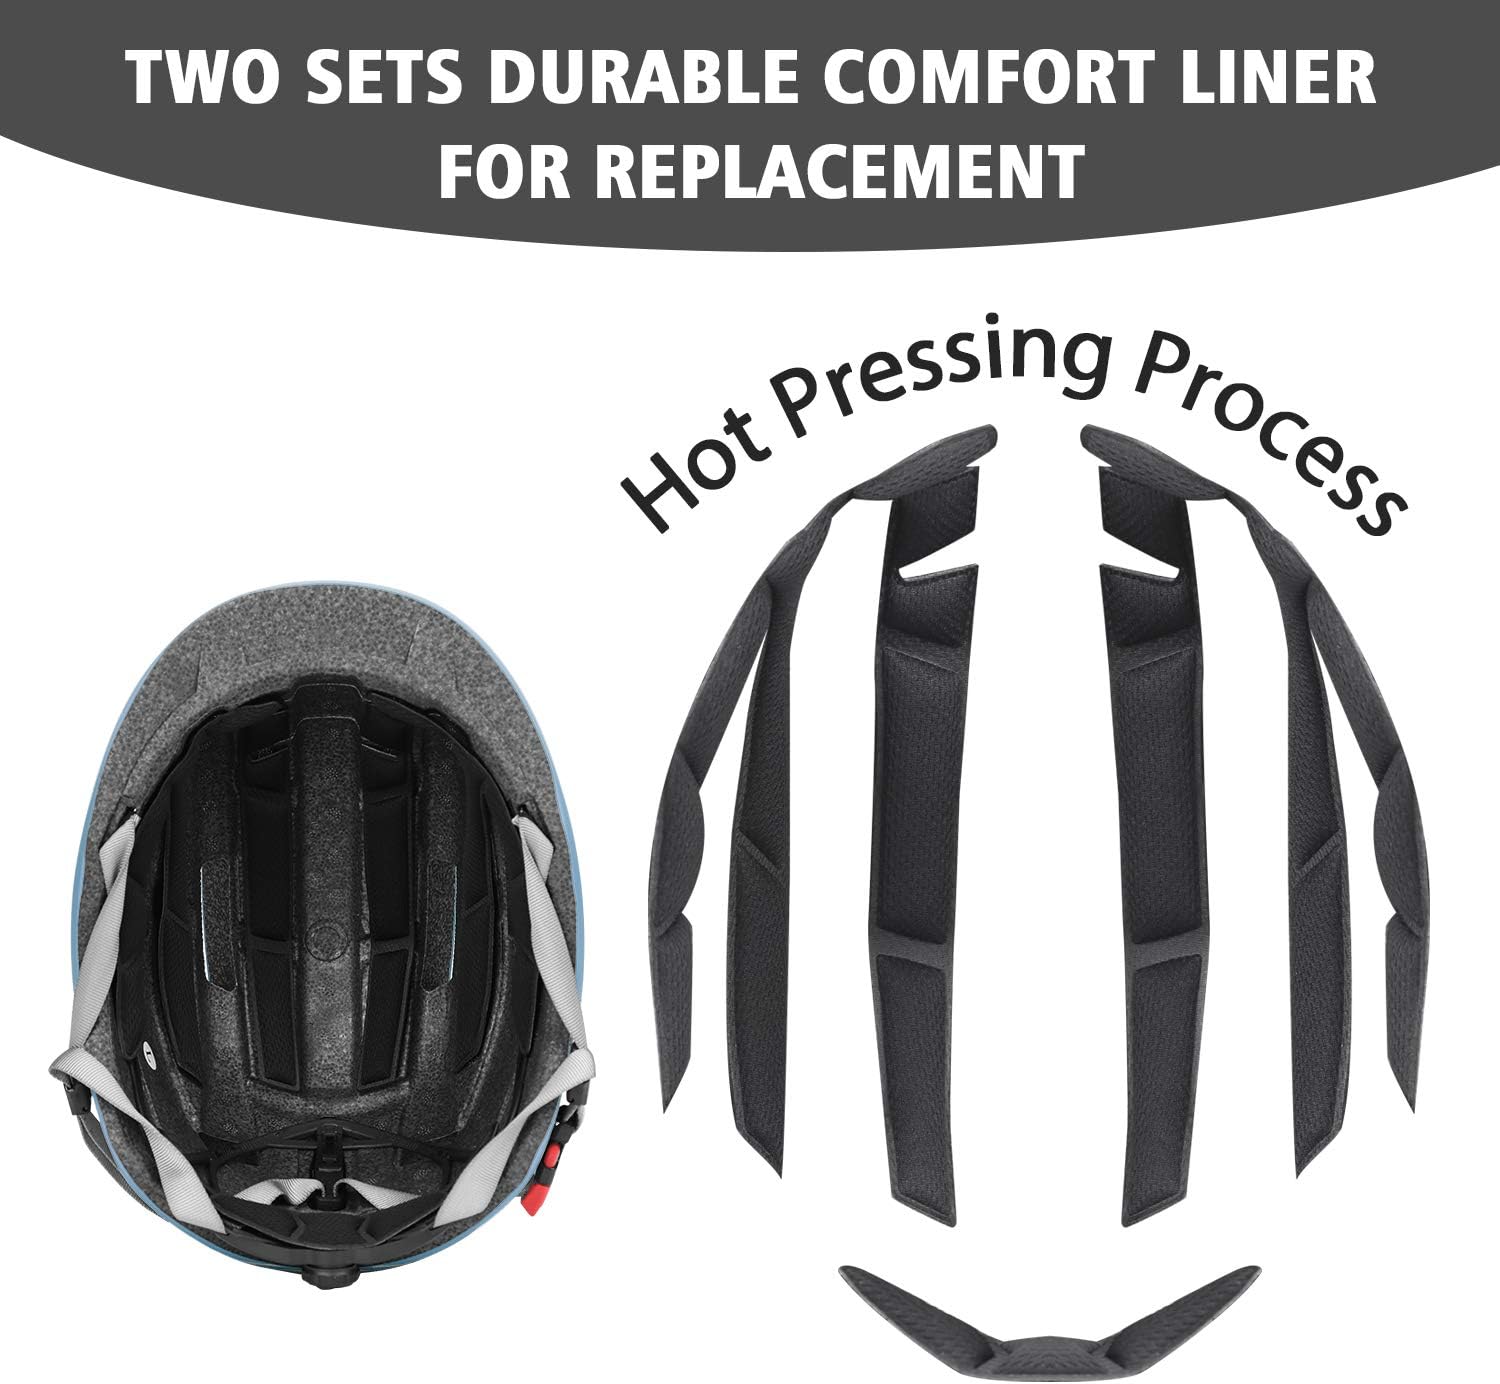 Adult Urban Bike Helmet - Adjustable Fit System & Integrated Taillight